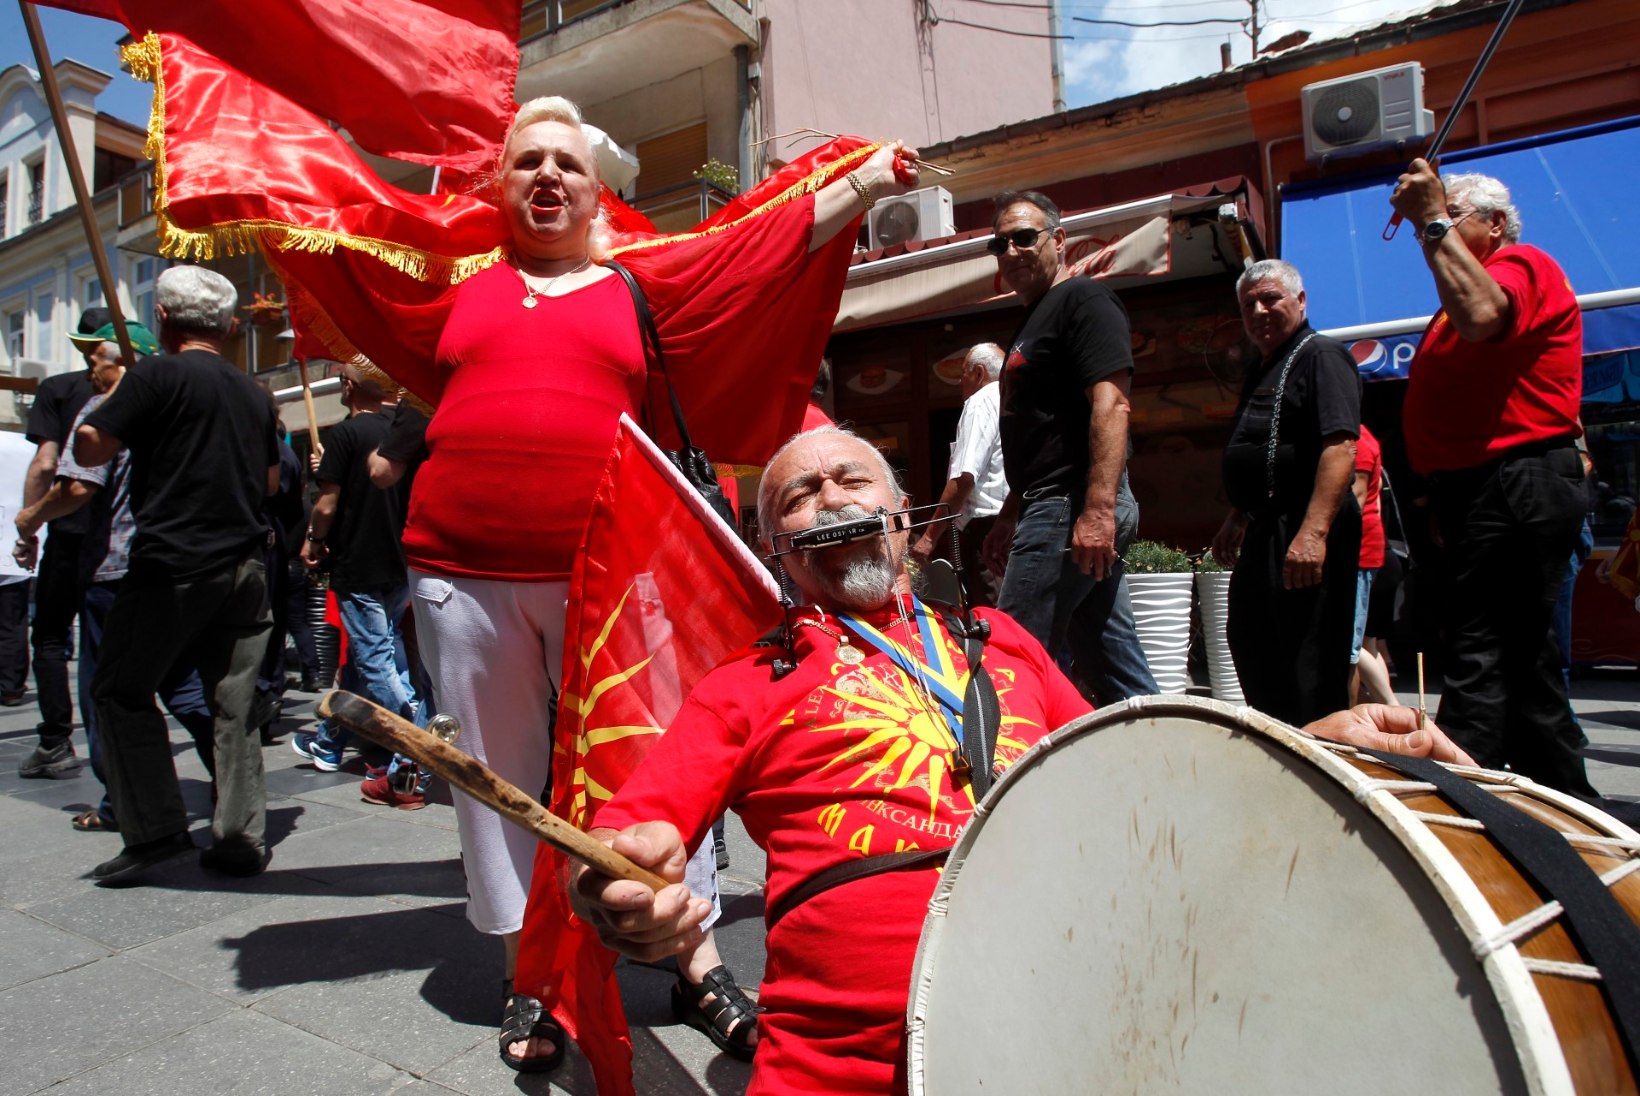 KELLELE KUULUB ALEKSANDER SUUR? Kreeka-Makedoonia nimekokkuleppe taga peitub sügav kultuuriline uhkus ja põlgus